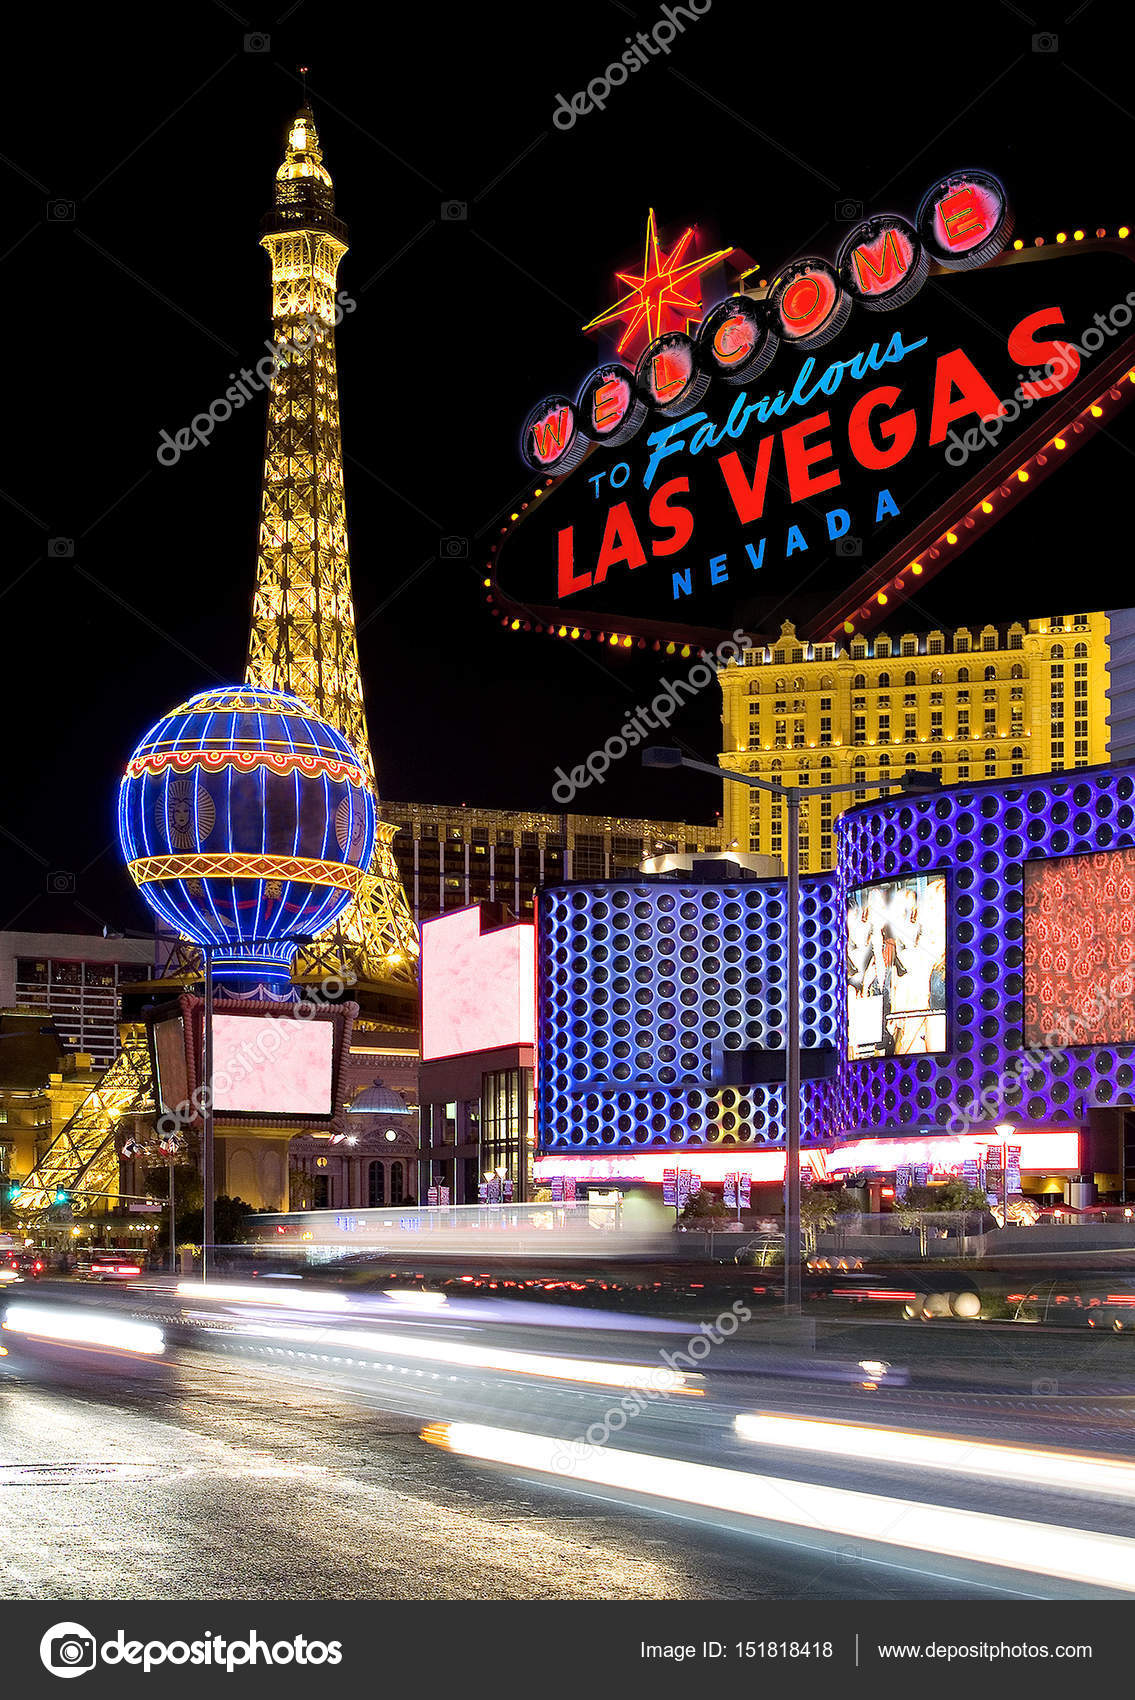 Jogo Na Noite E Ganha Por Las Vegas. Nevada. Fotografia Editorial